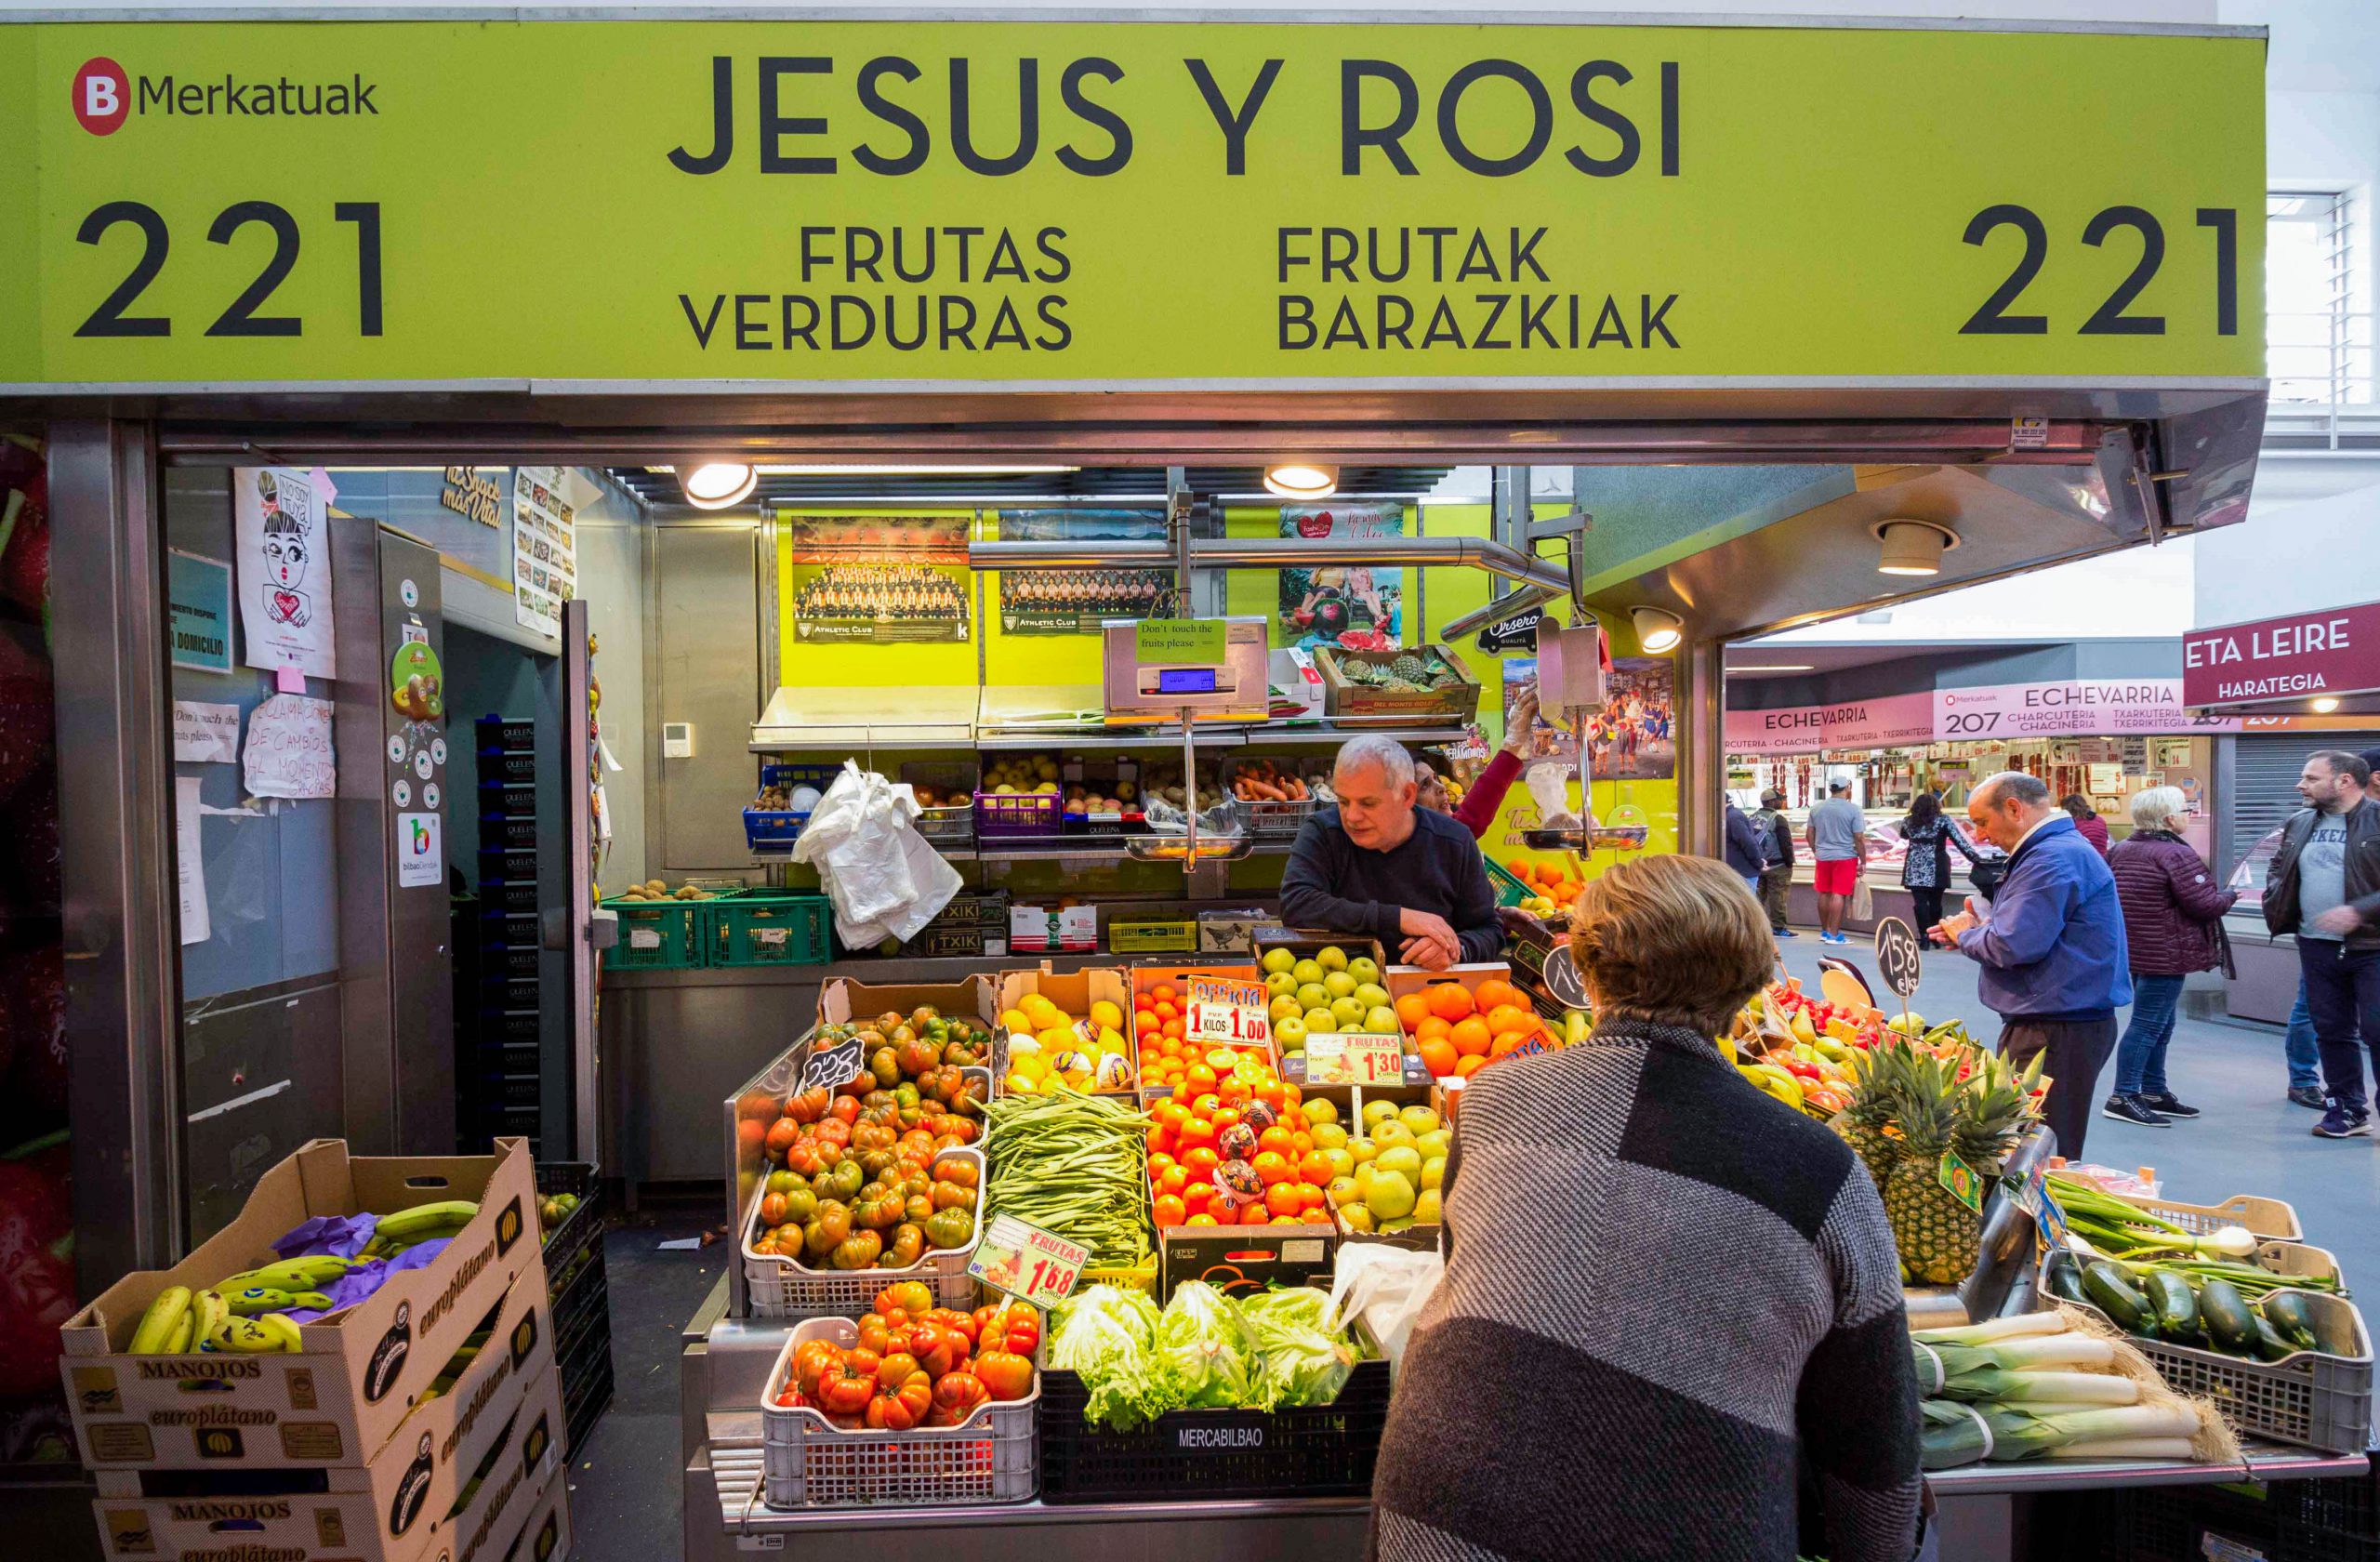 Frutas y verduras Jesus y Rosi